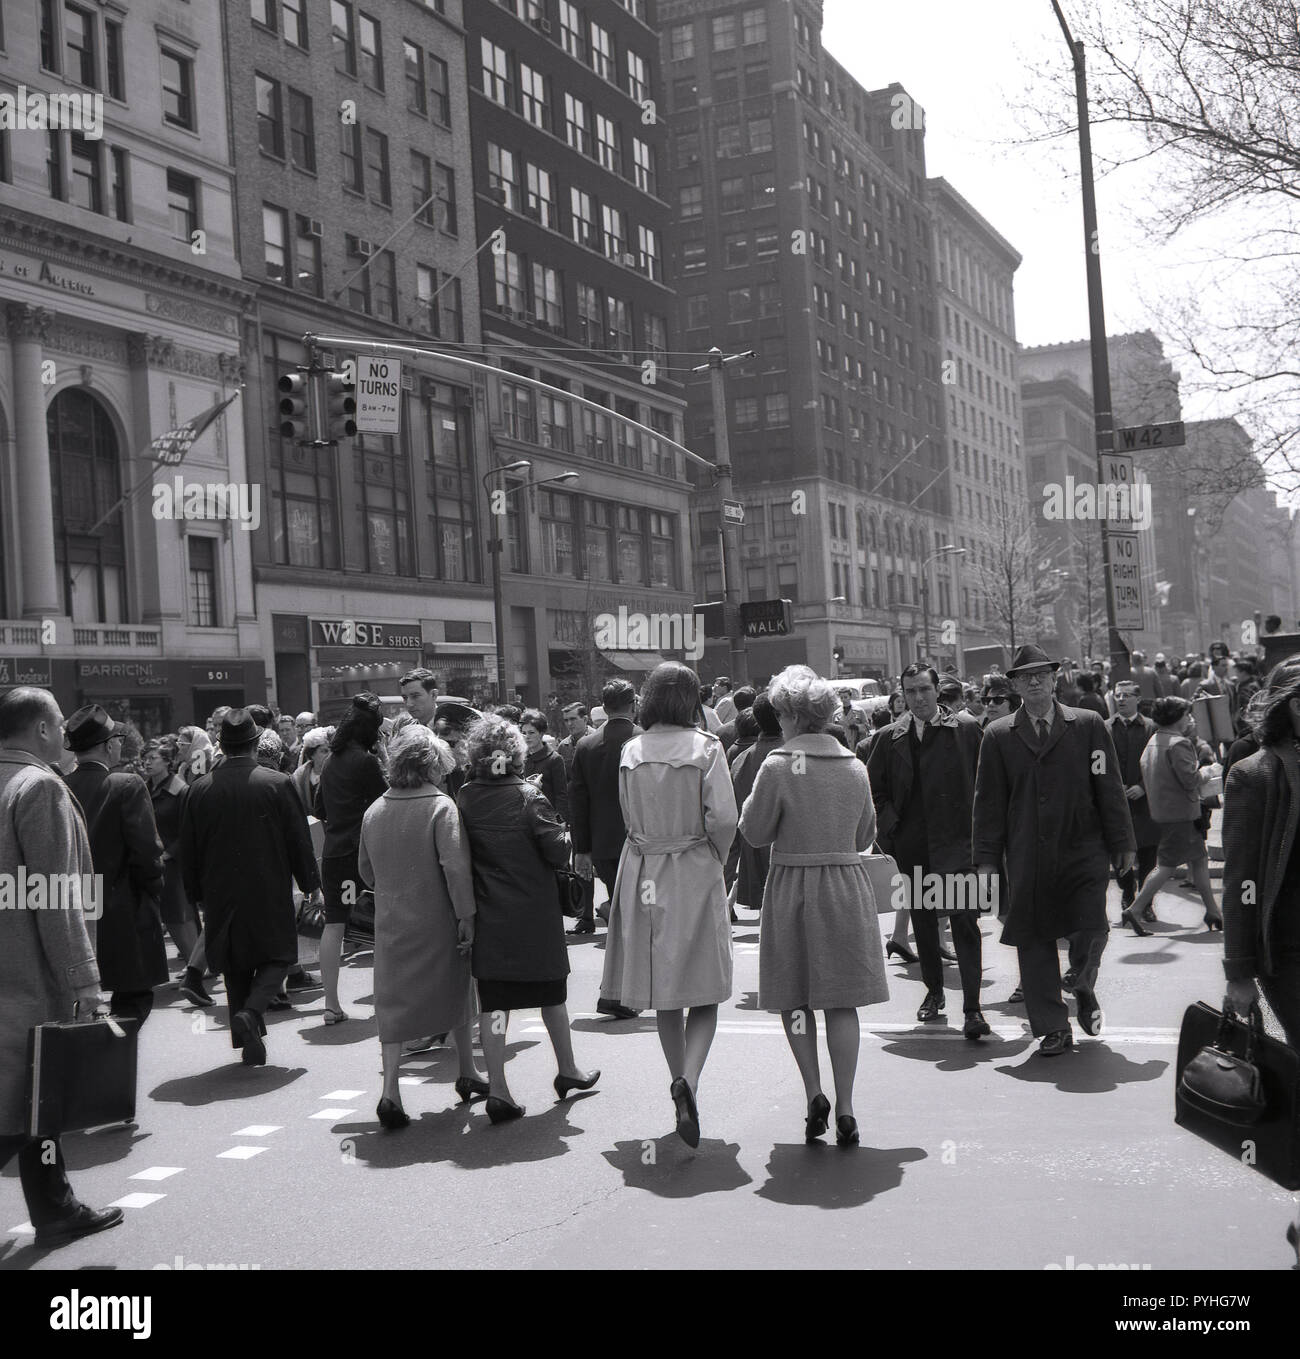 1960, históricos, los neoyorquinos caminando a través de la intersección de la calle West 42nd Street, Midtown en Manhattan, Nueva York, Ciudad de Nueva York, EE.UU. Foto de stock